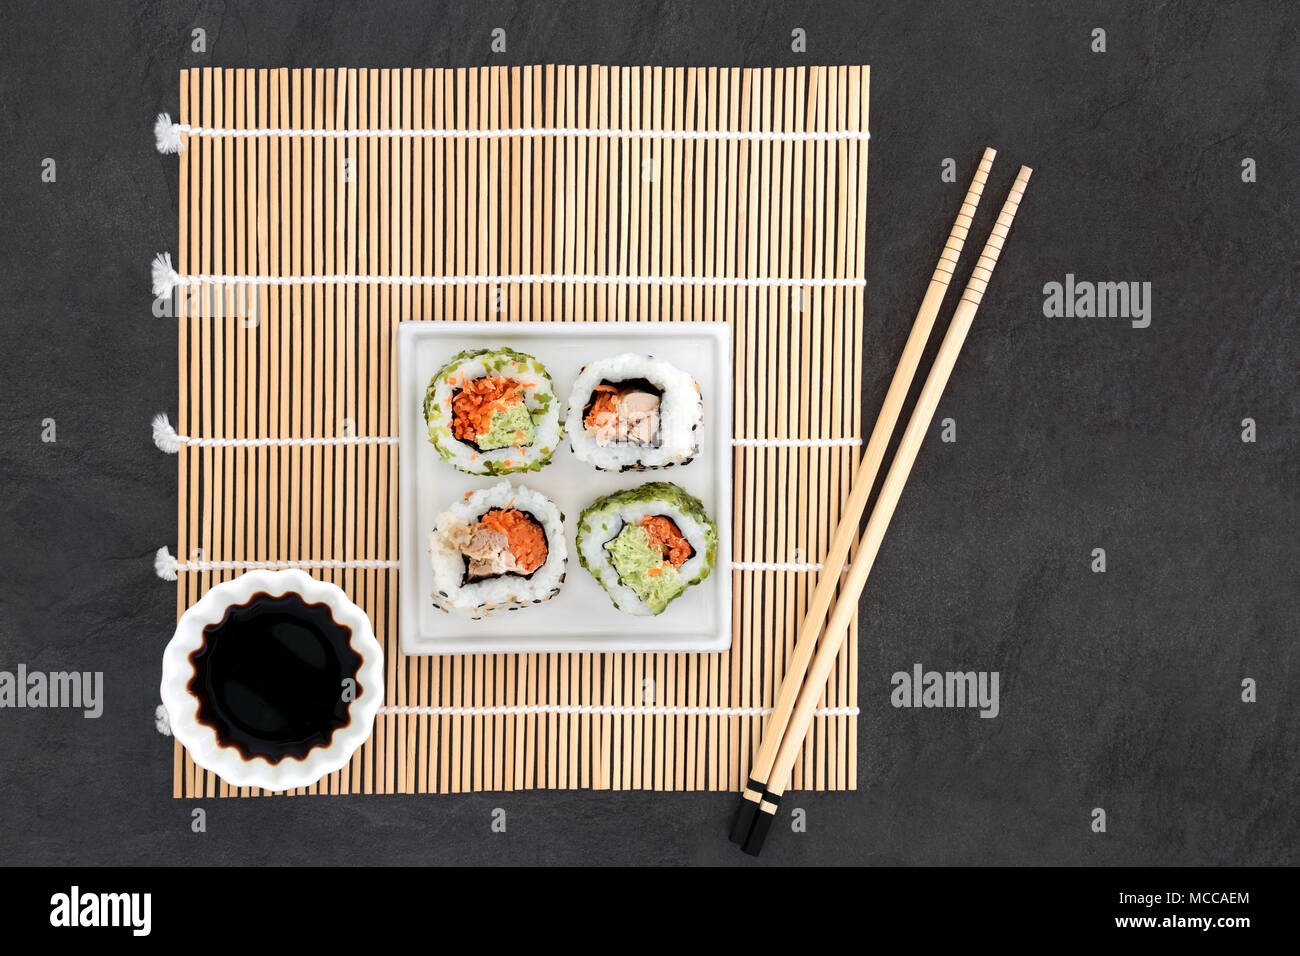 Les sushis japonais et de sauce de soja avec des baguettes sur un tapis de bambou sur fond d'ardoise. Santé macrobiotique alimentation riche en protéines, d'antioxydants et d'oméga 3. Banque D'Images